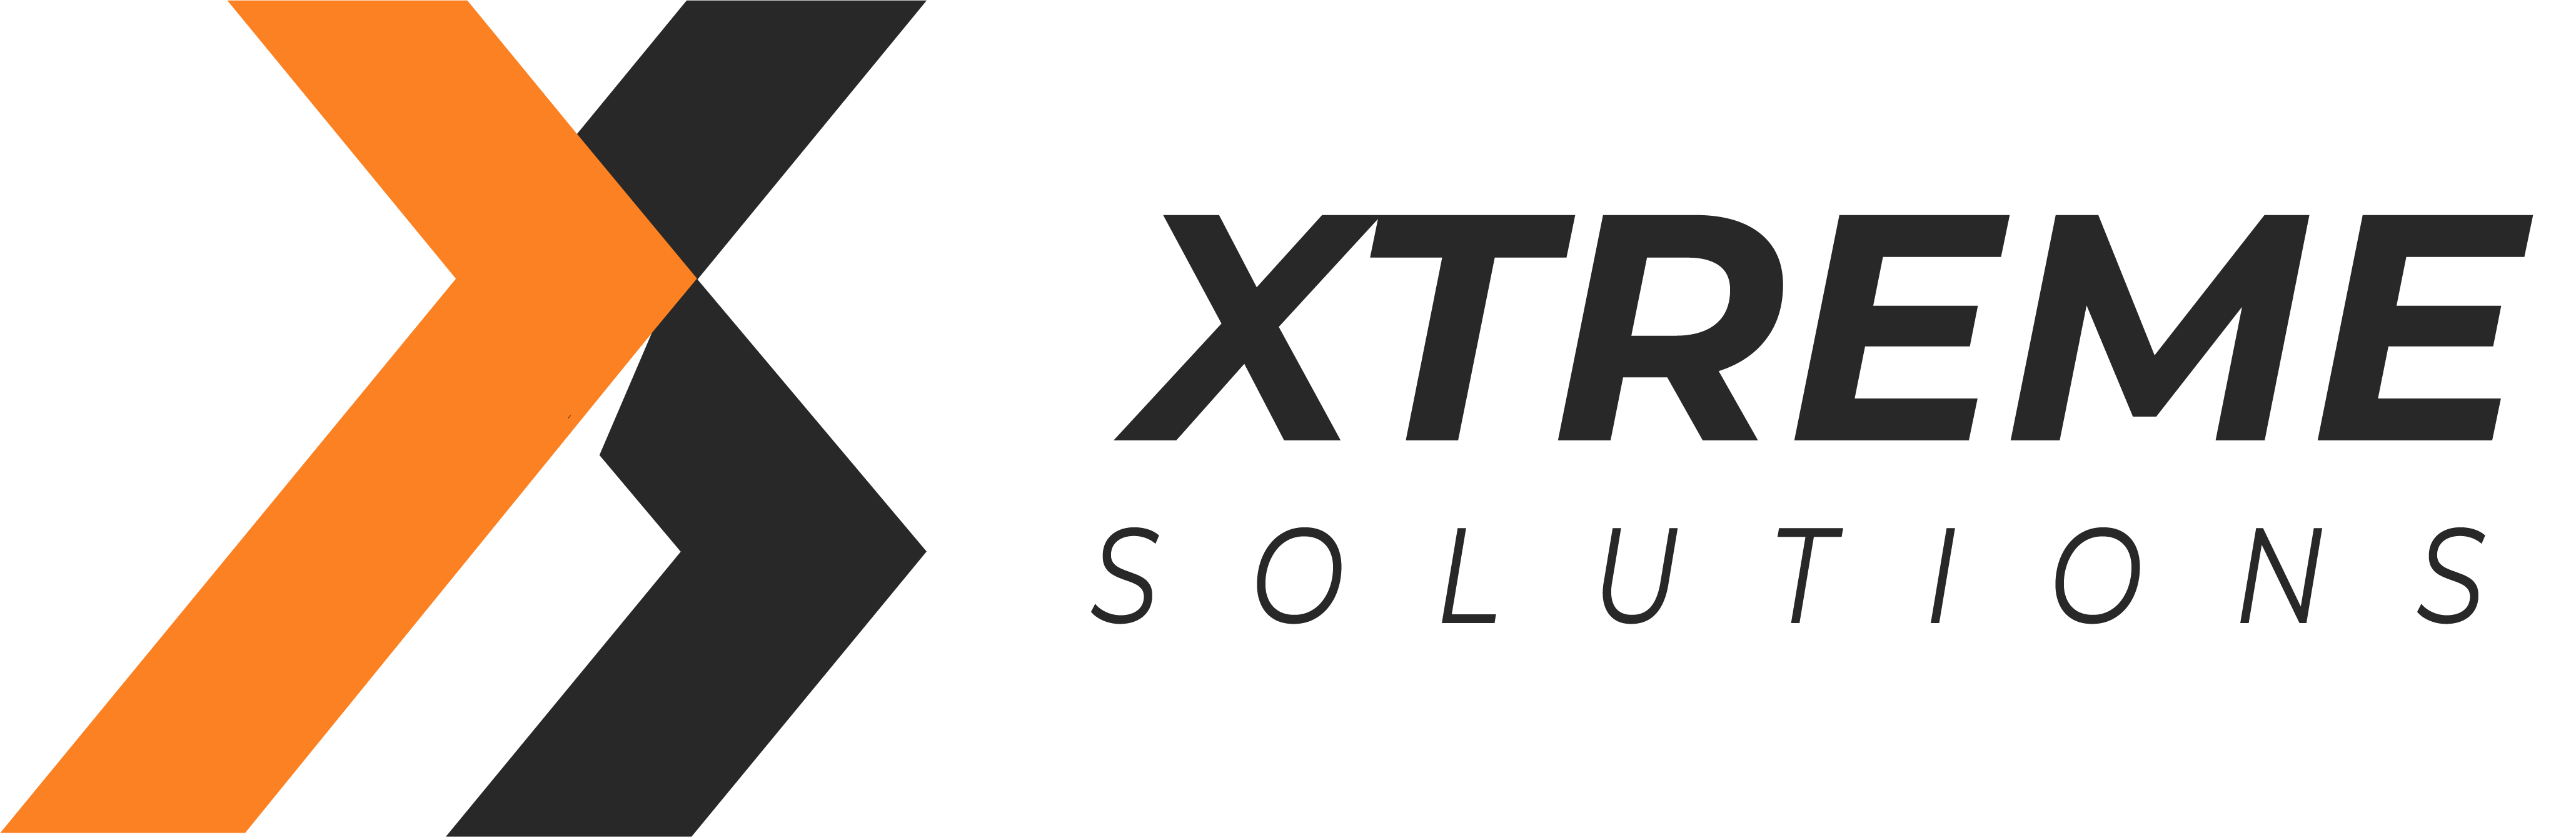 Boutique d’e-commerce Xtreme Solutions